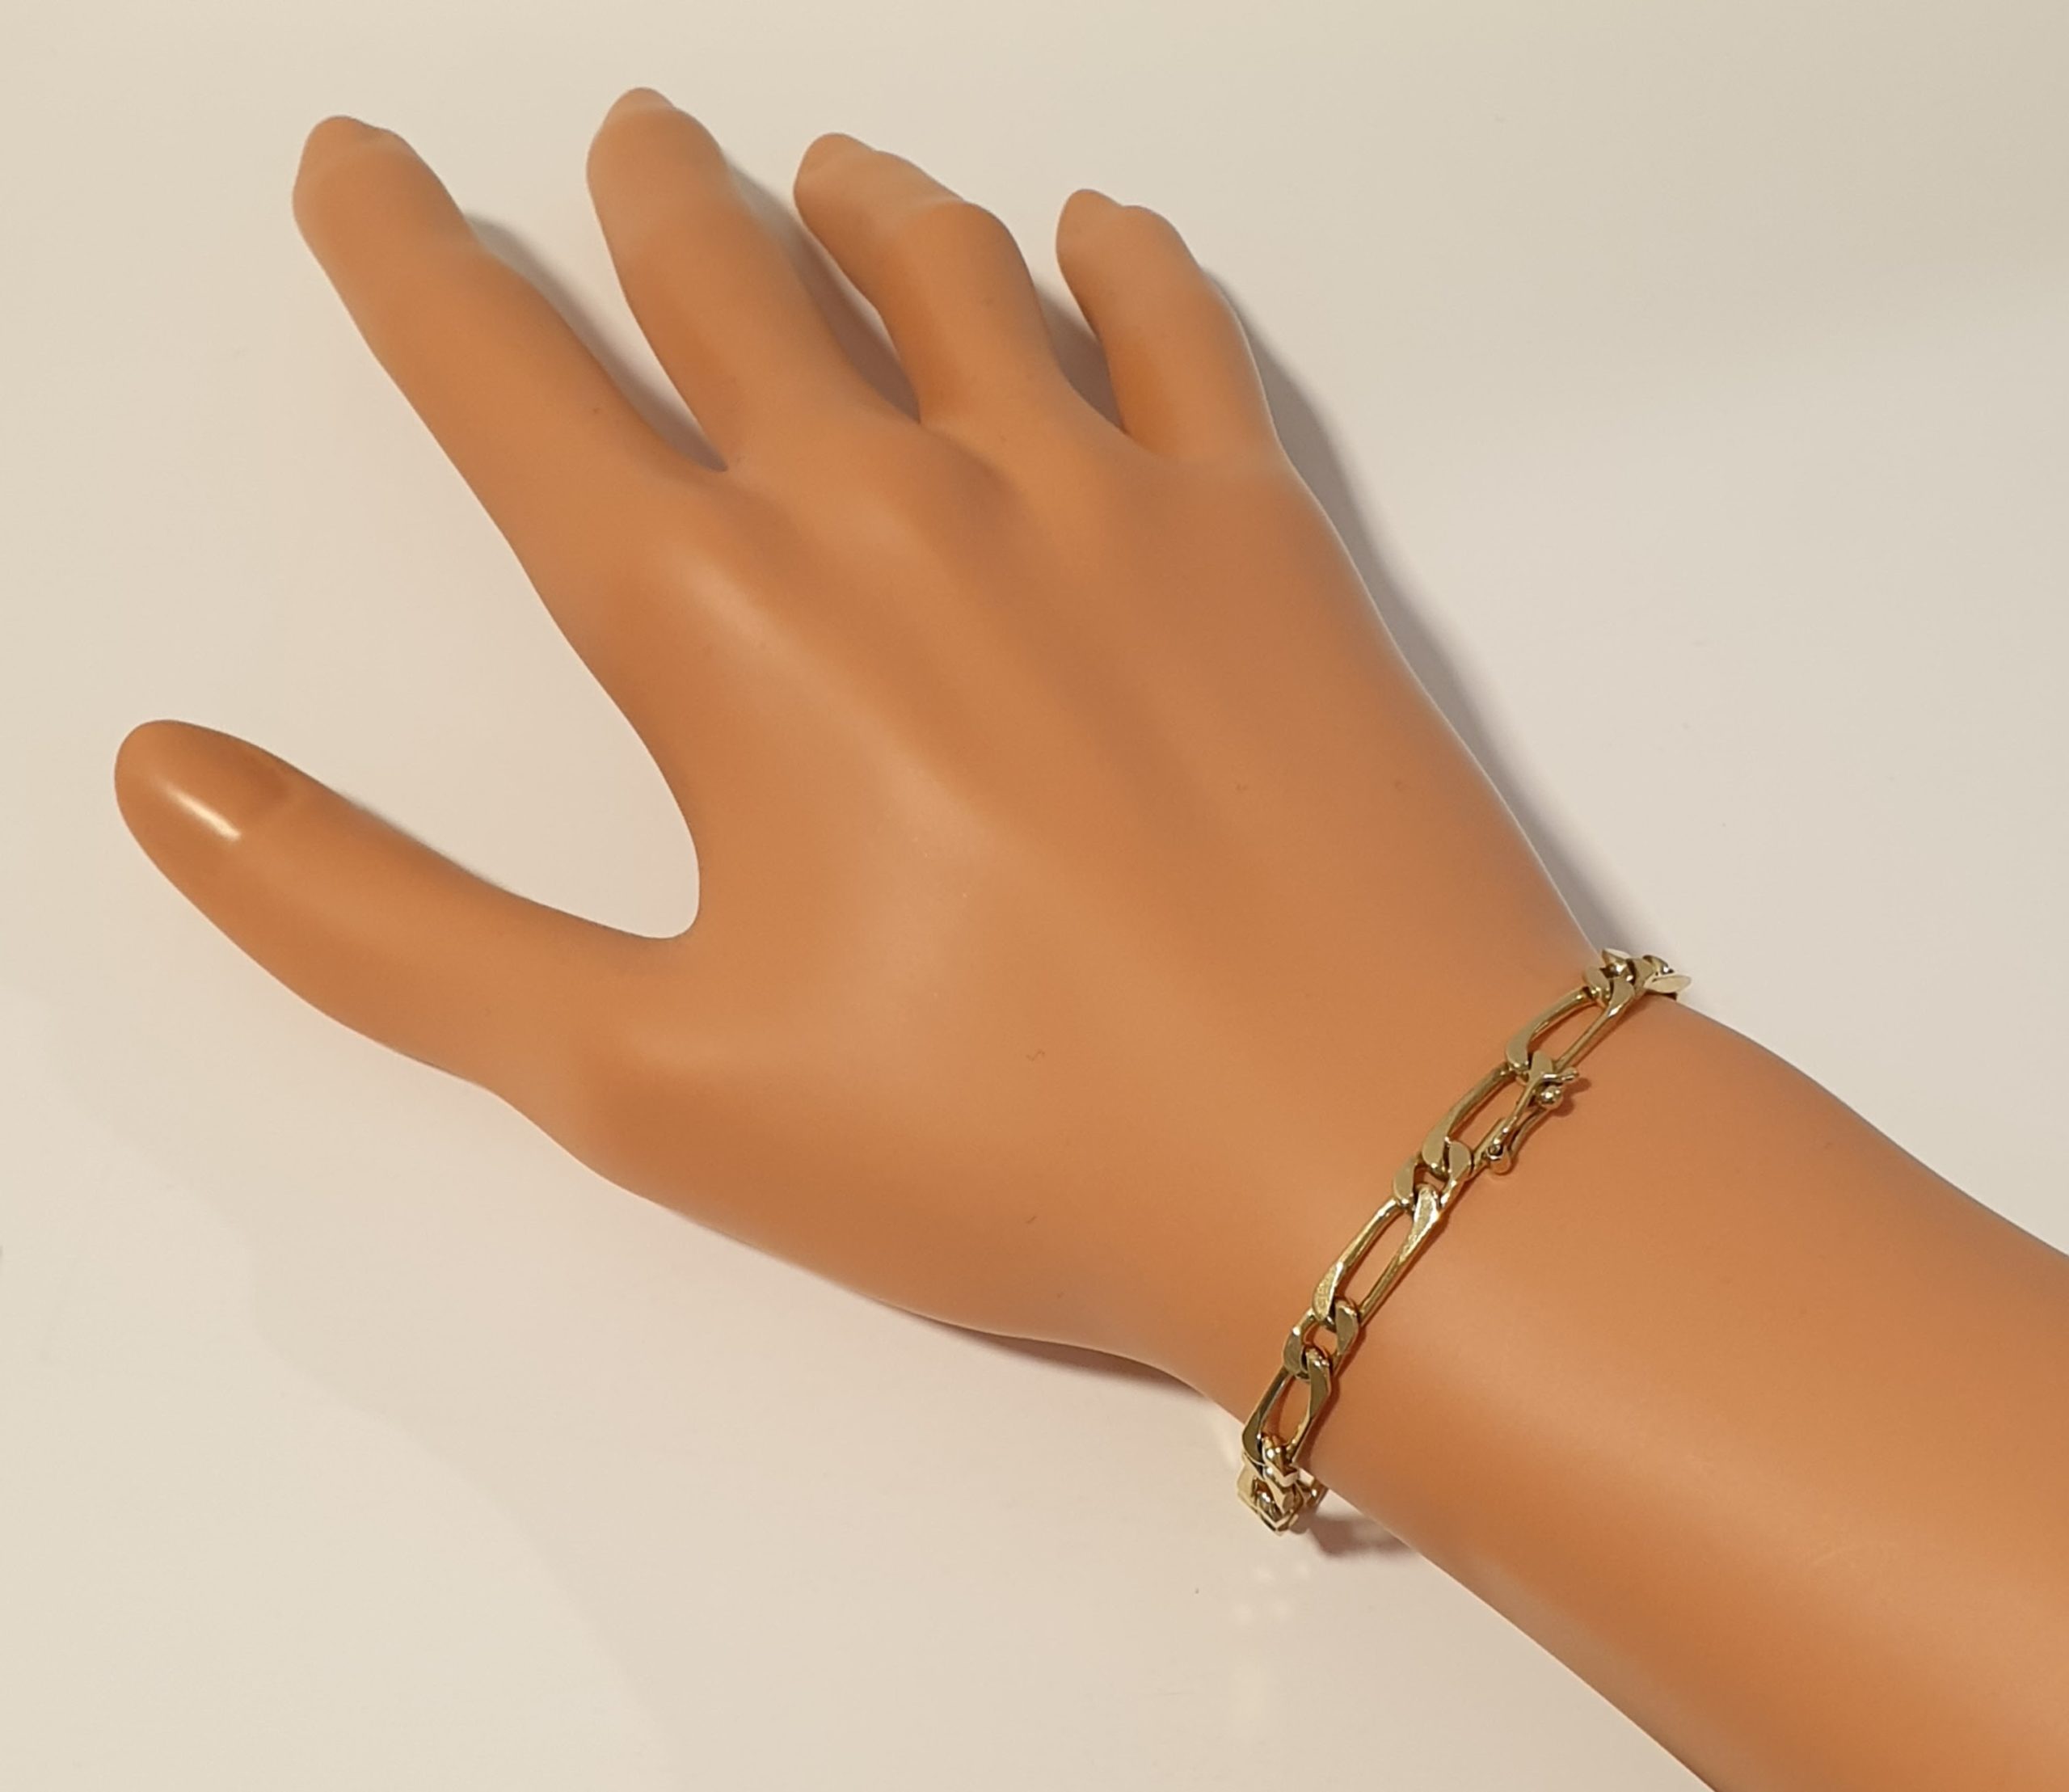 Motivatie klauw Middellandse Zee 14 Karaat geelgouden Figaro armband tweedehands # 26162 |  Goudsmederij/Juwelier Arnold van Dodewaard